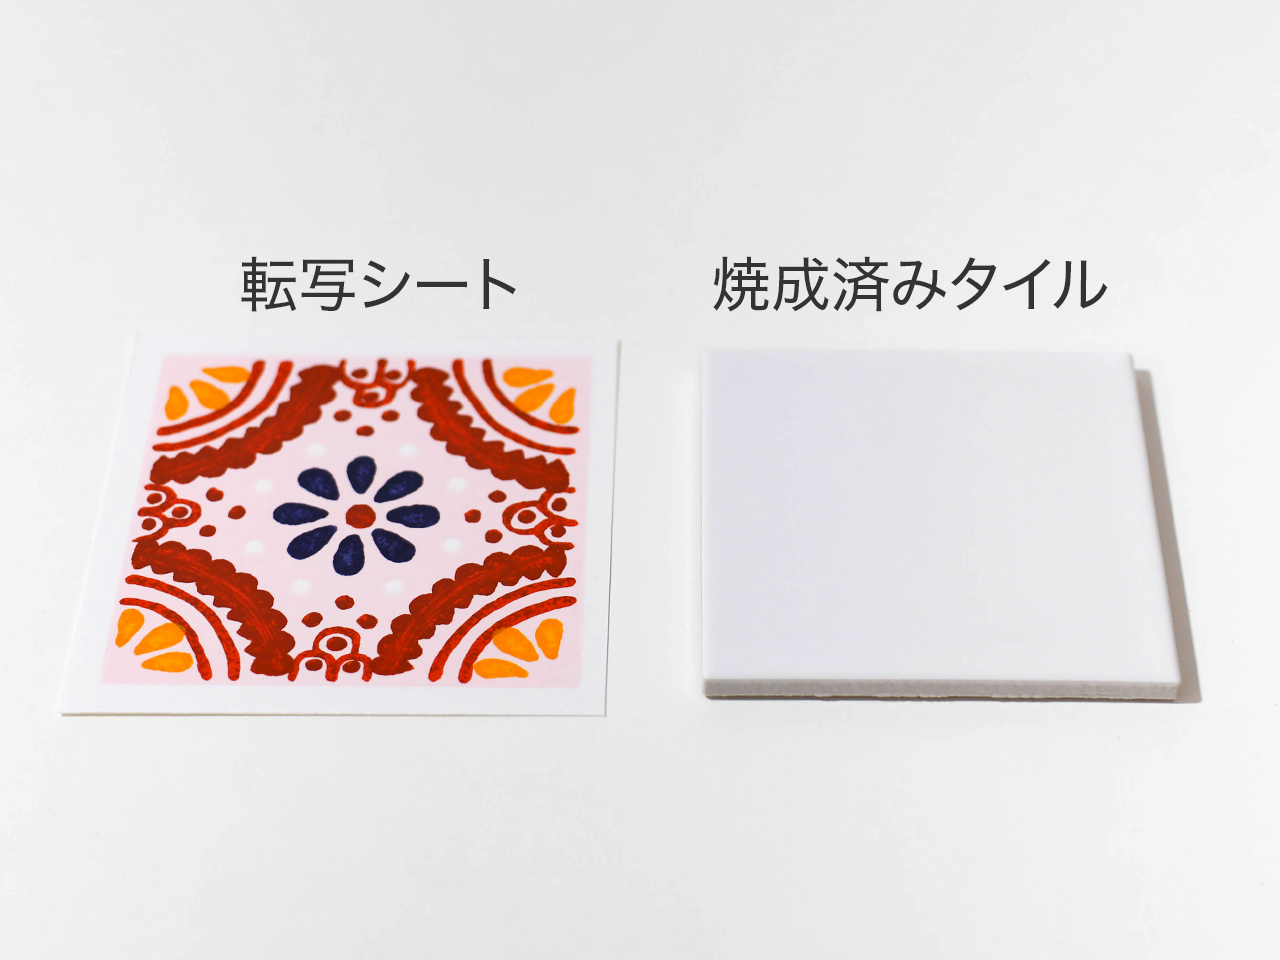 (左)転写紙と(右)焼成済みのタイルを用意。